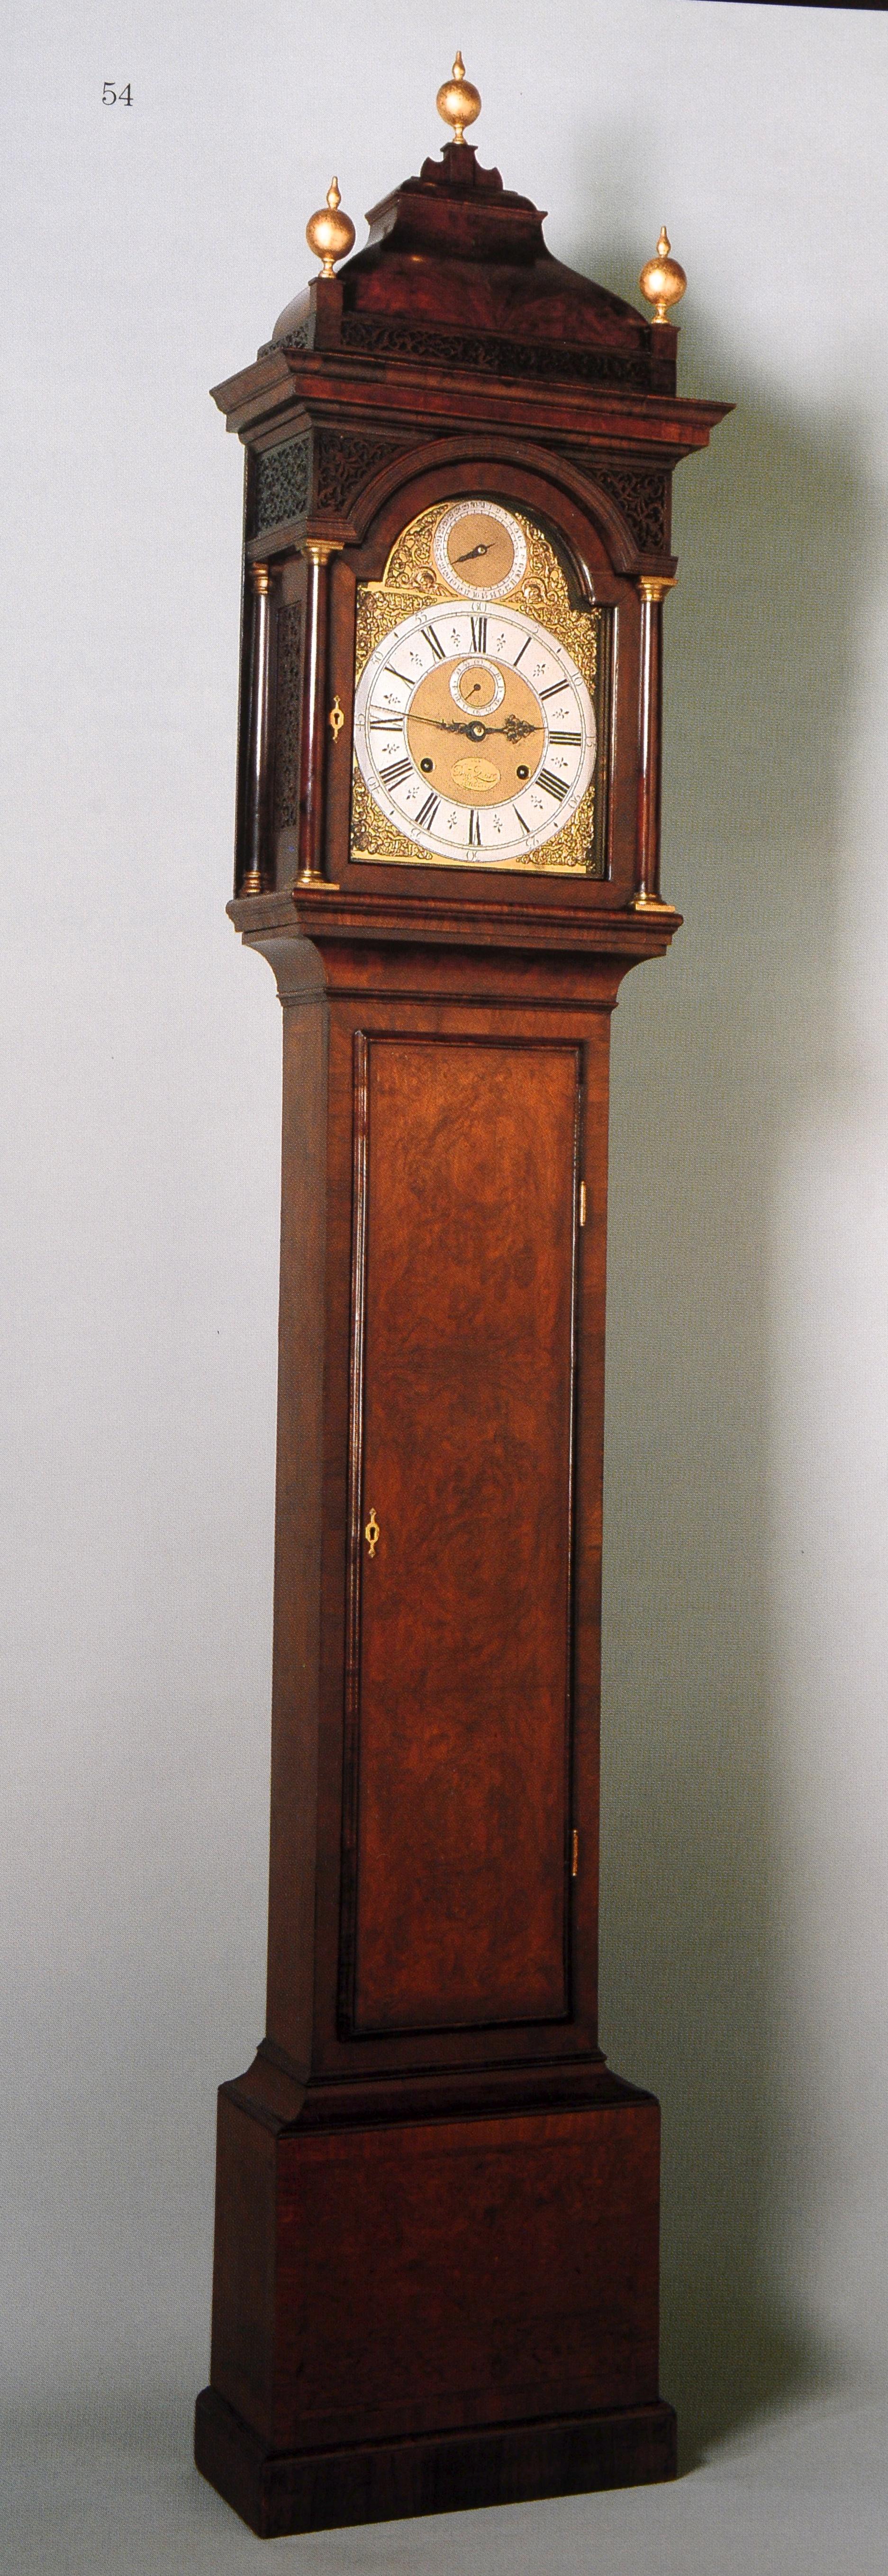 Collection d'horloges de justice Warren Shepro : Sotheby's NY, 26 avril 2001, 1ère édition en vente 9